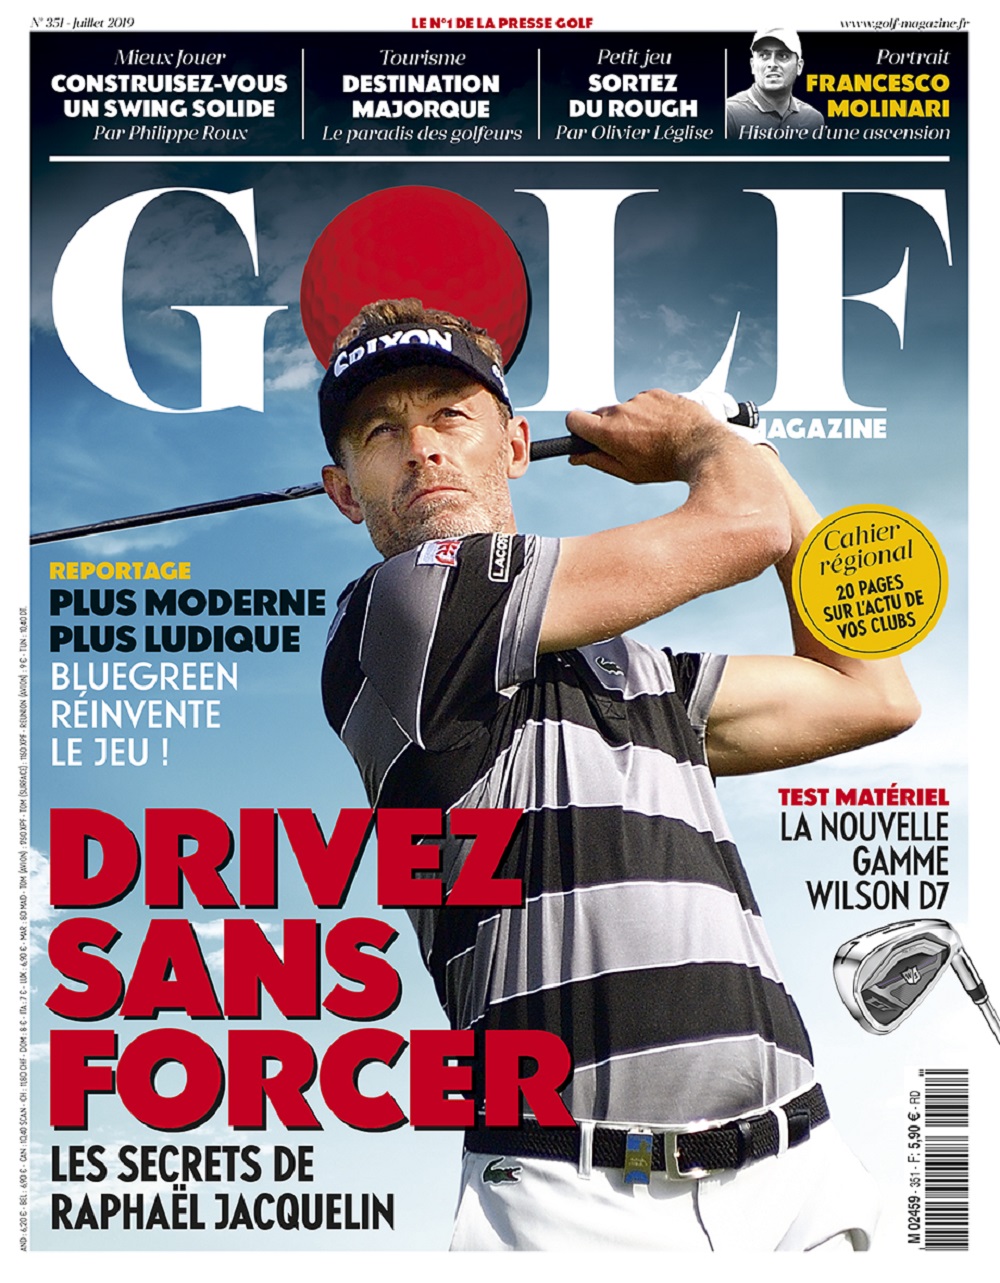 Le Golf Magazine n°351 est en kiosque